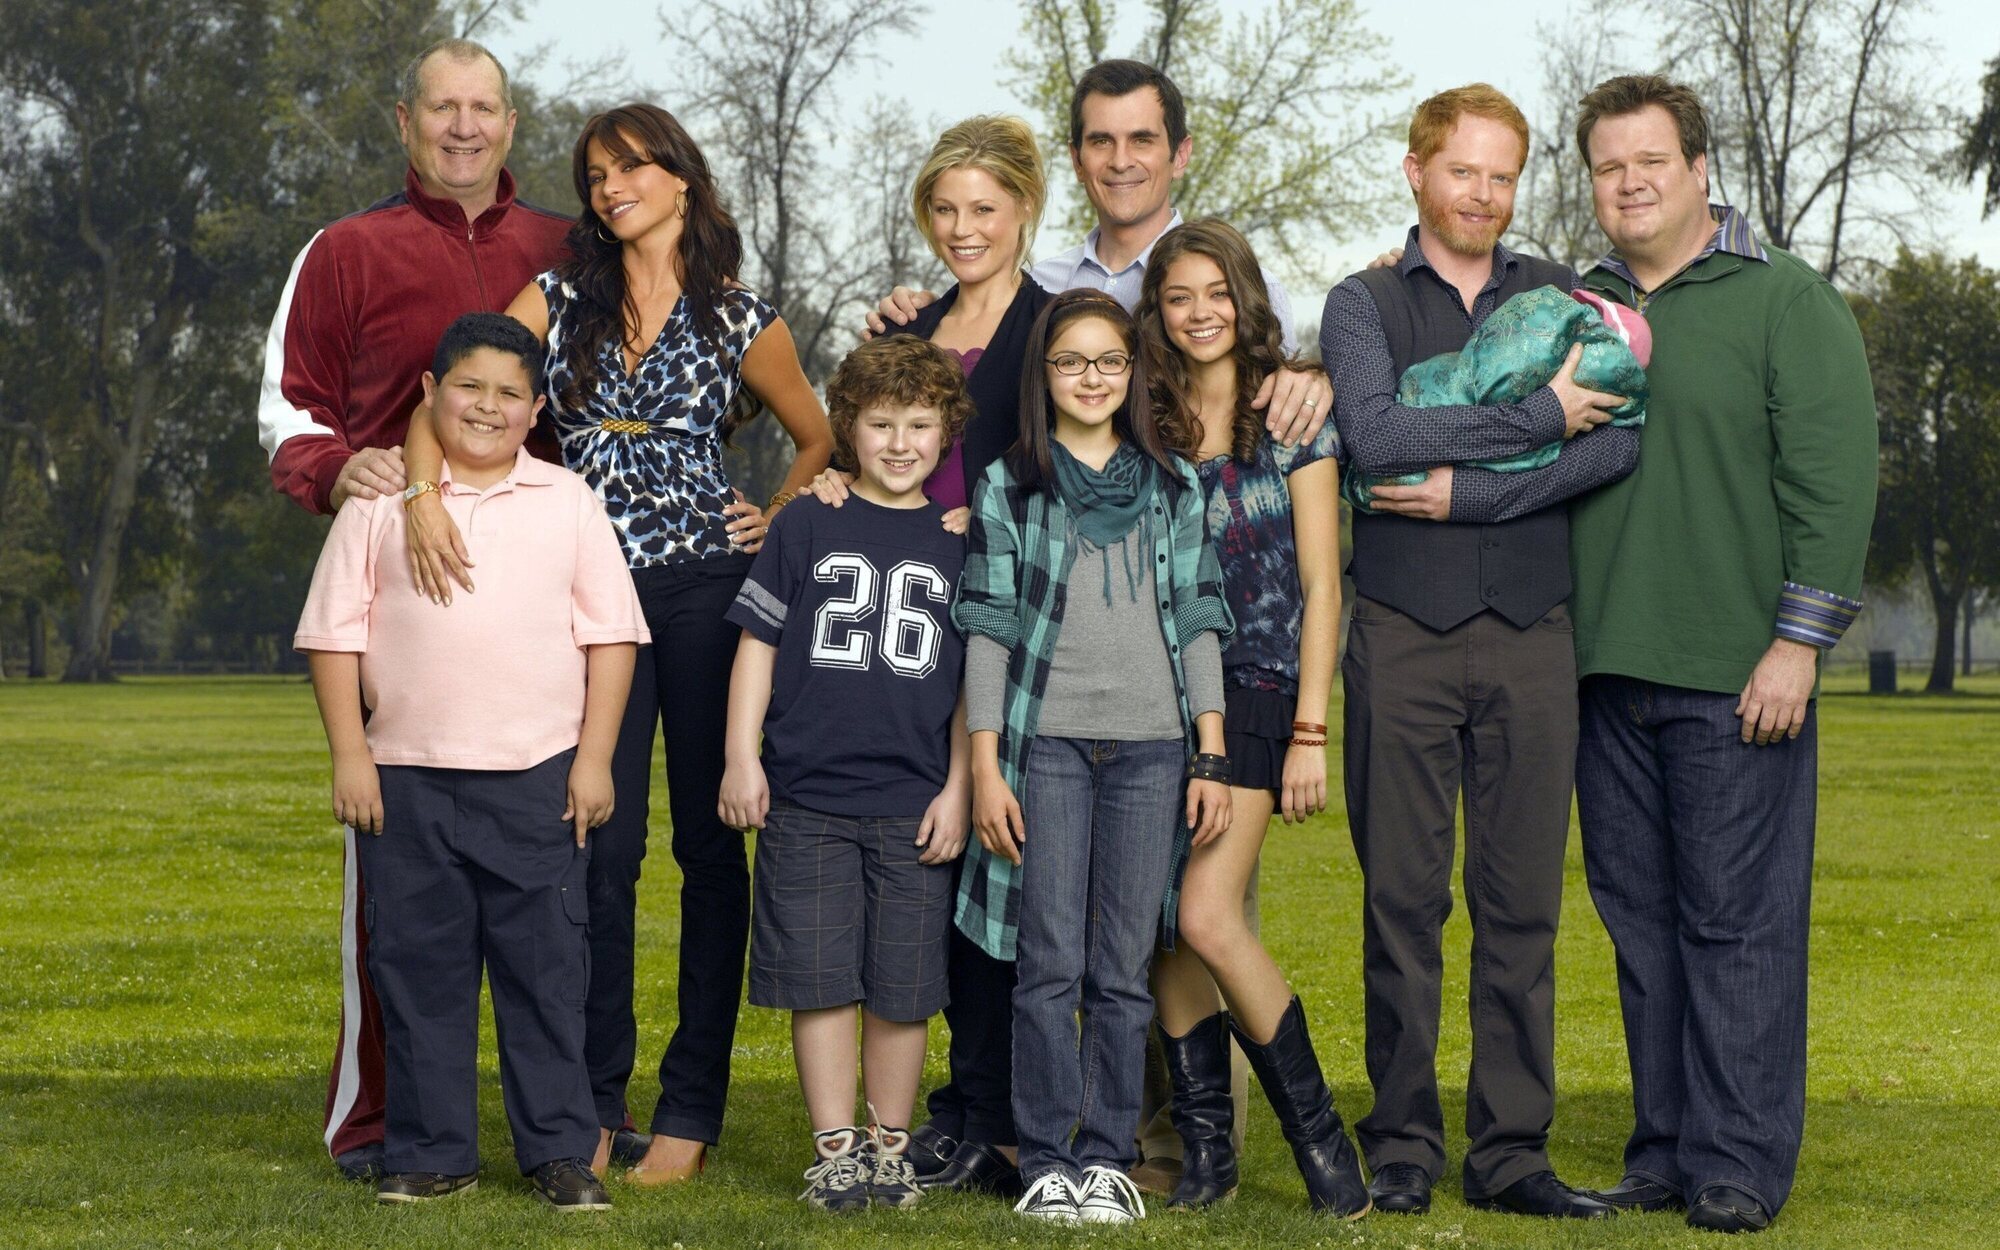 El reparto de 'Modern Family' se reúne tres años después del final de la serie: "Os echo de menos a todos"